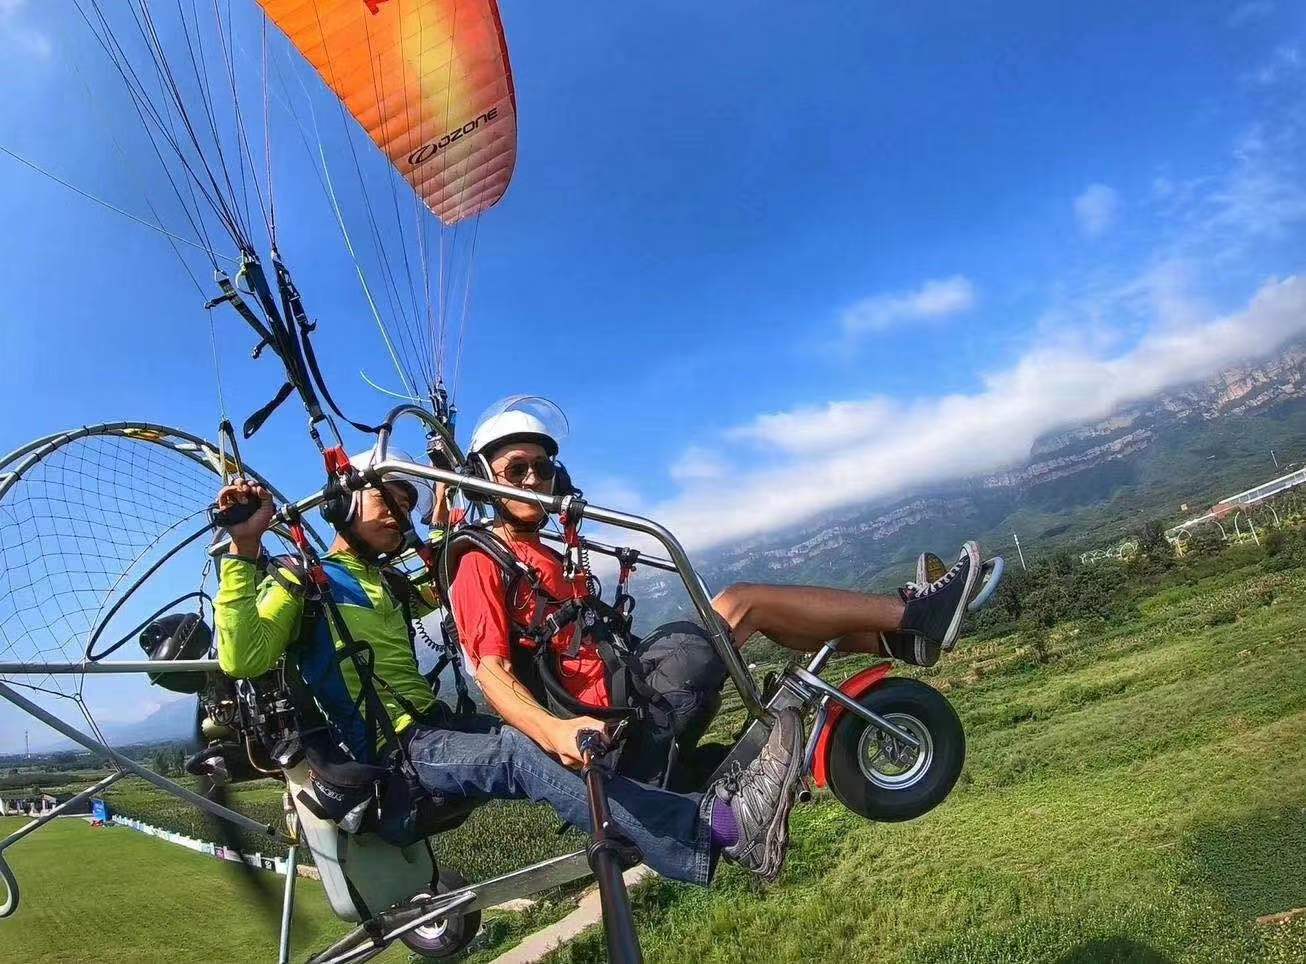 【产品特色】动力伞 三角翼 滑翔伞河南林州林虑山滑翔伞基地图文详情